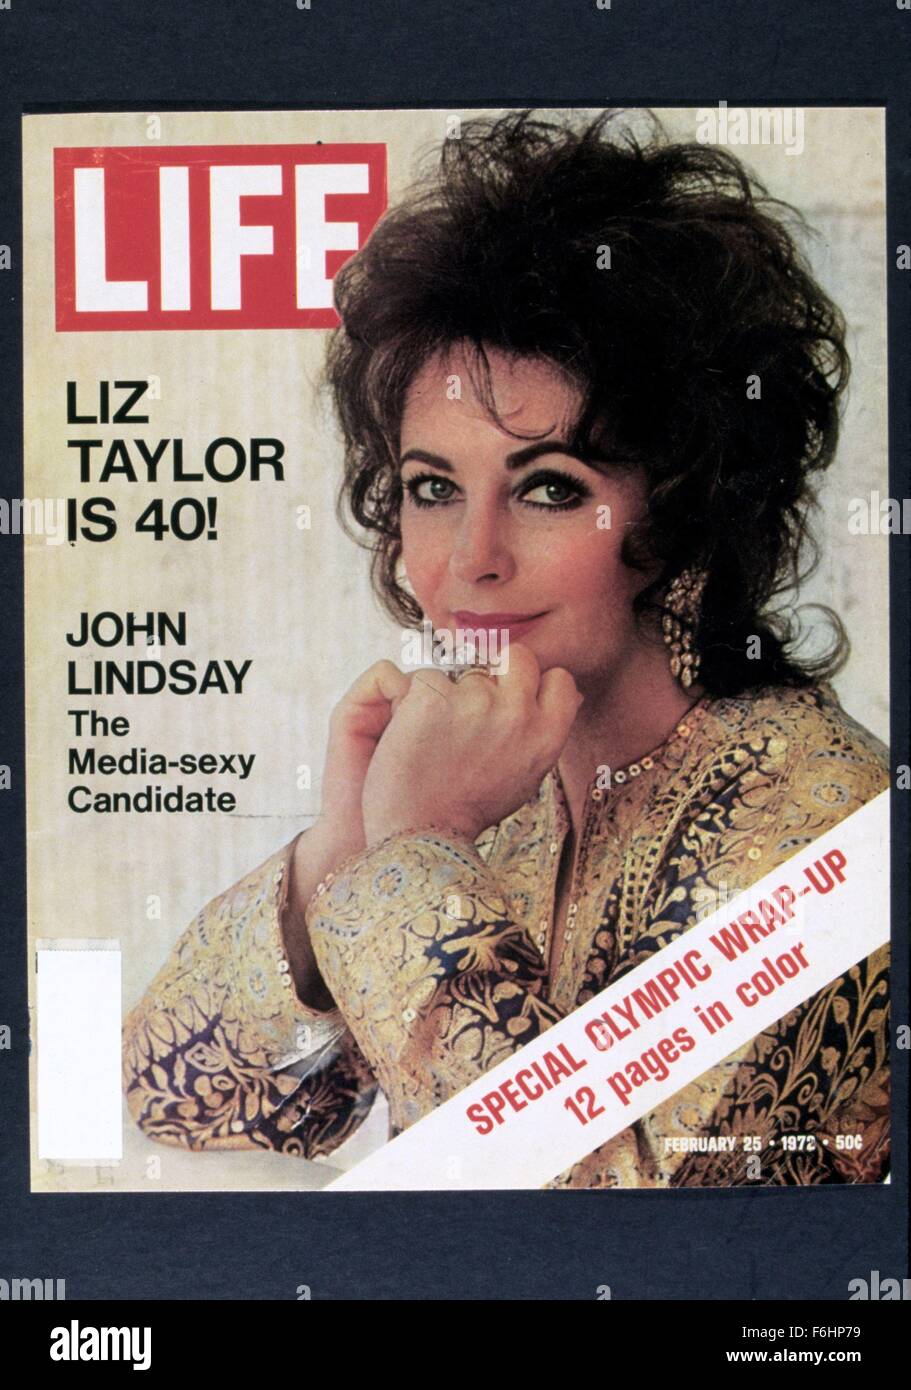 1972, il titolo del film: la vita, nella foto: Elizabeth Taylor, Liz Taylor, COPERCHIO MAGAZINE, la rivista Life. (Credito Immagine: SNAP) Foto Stock